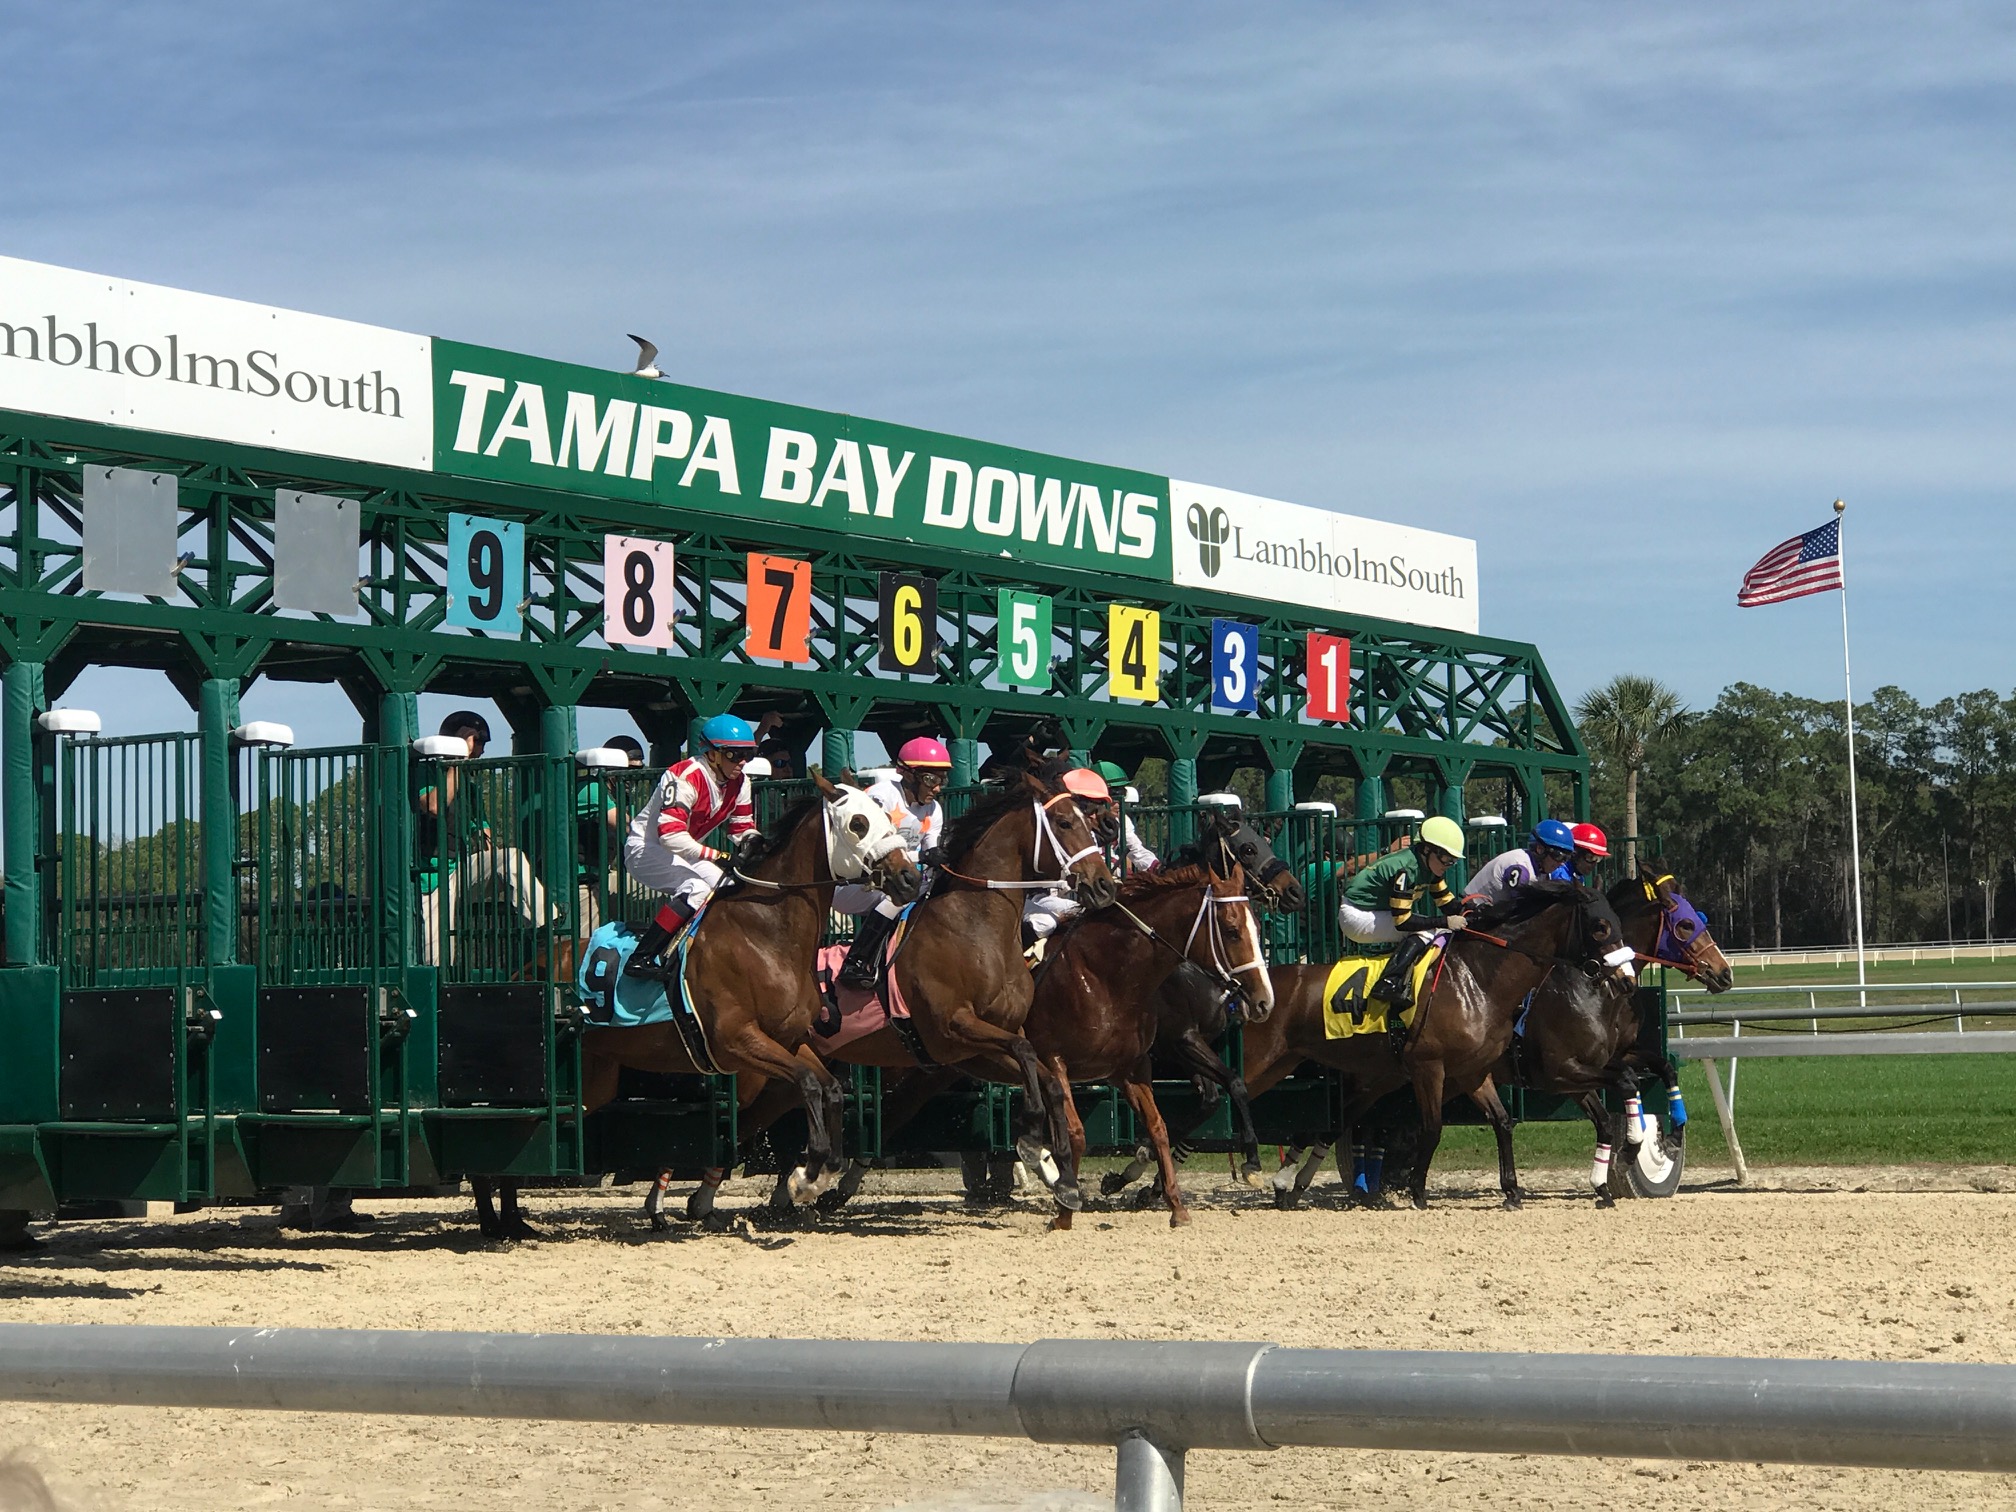 Tampa Bay Downs horse racing